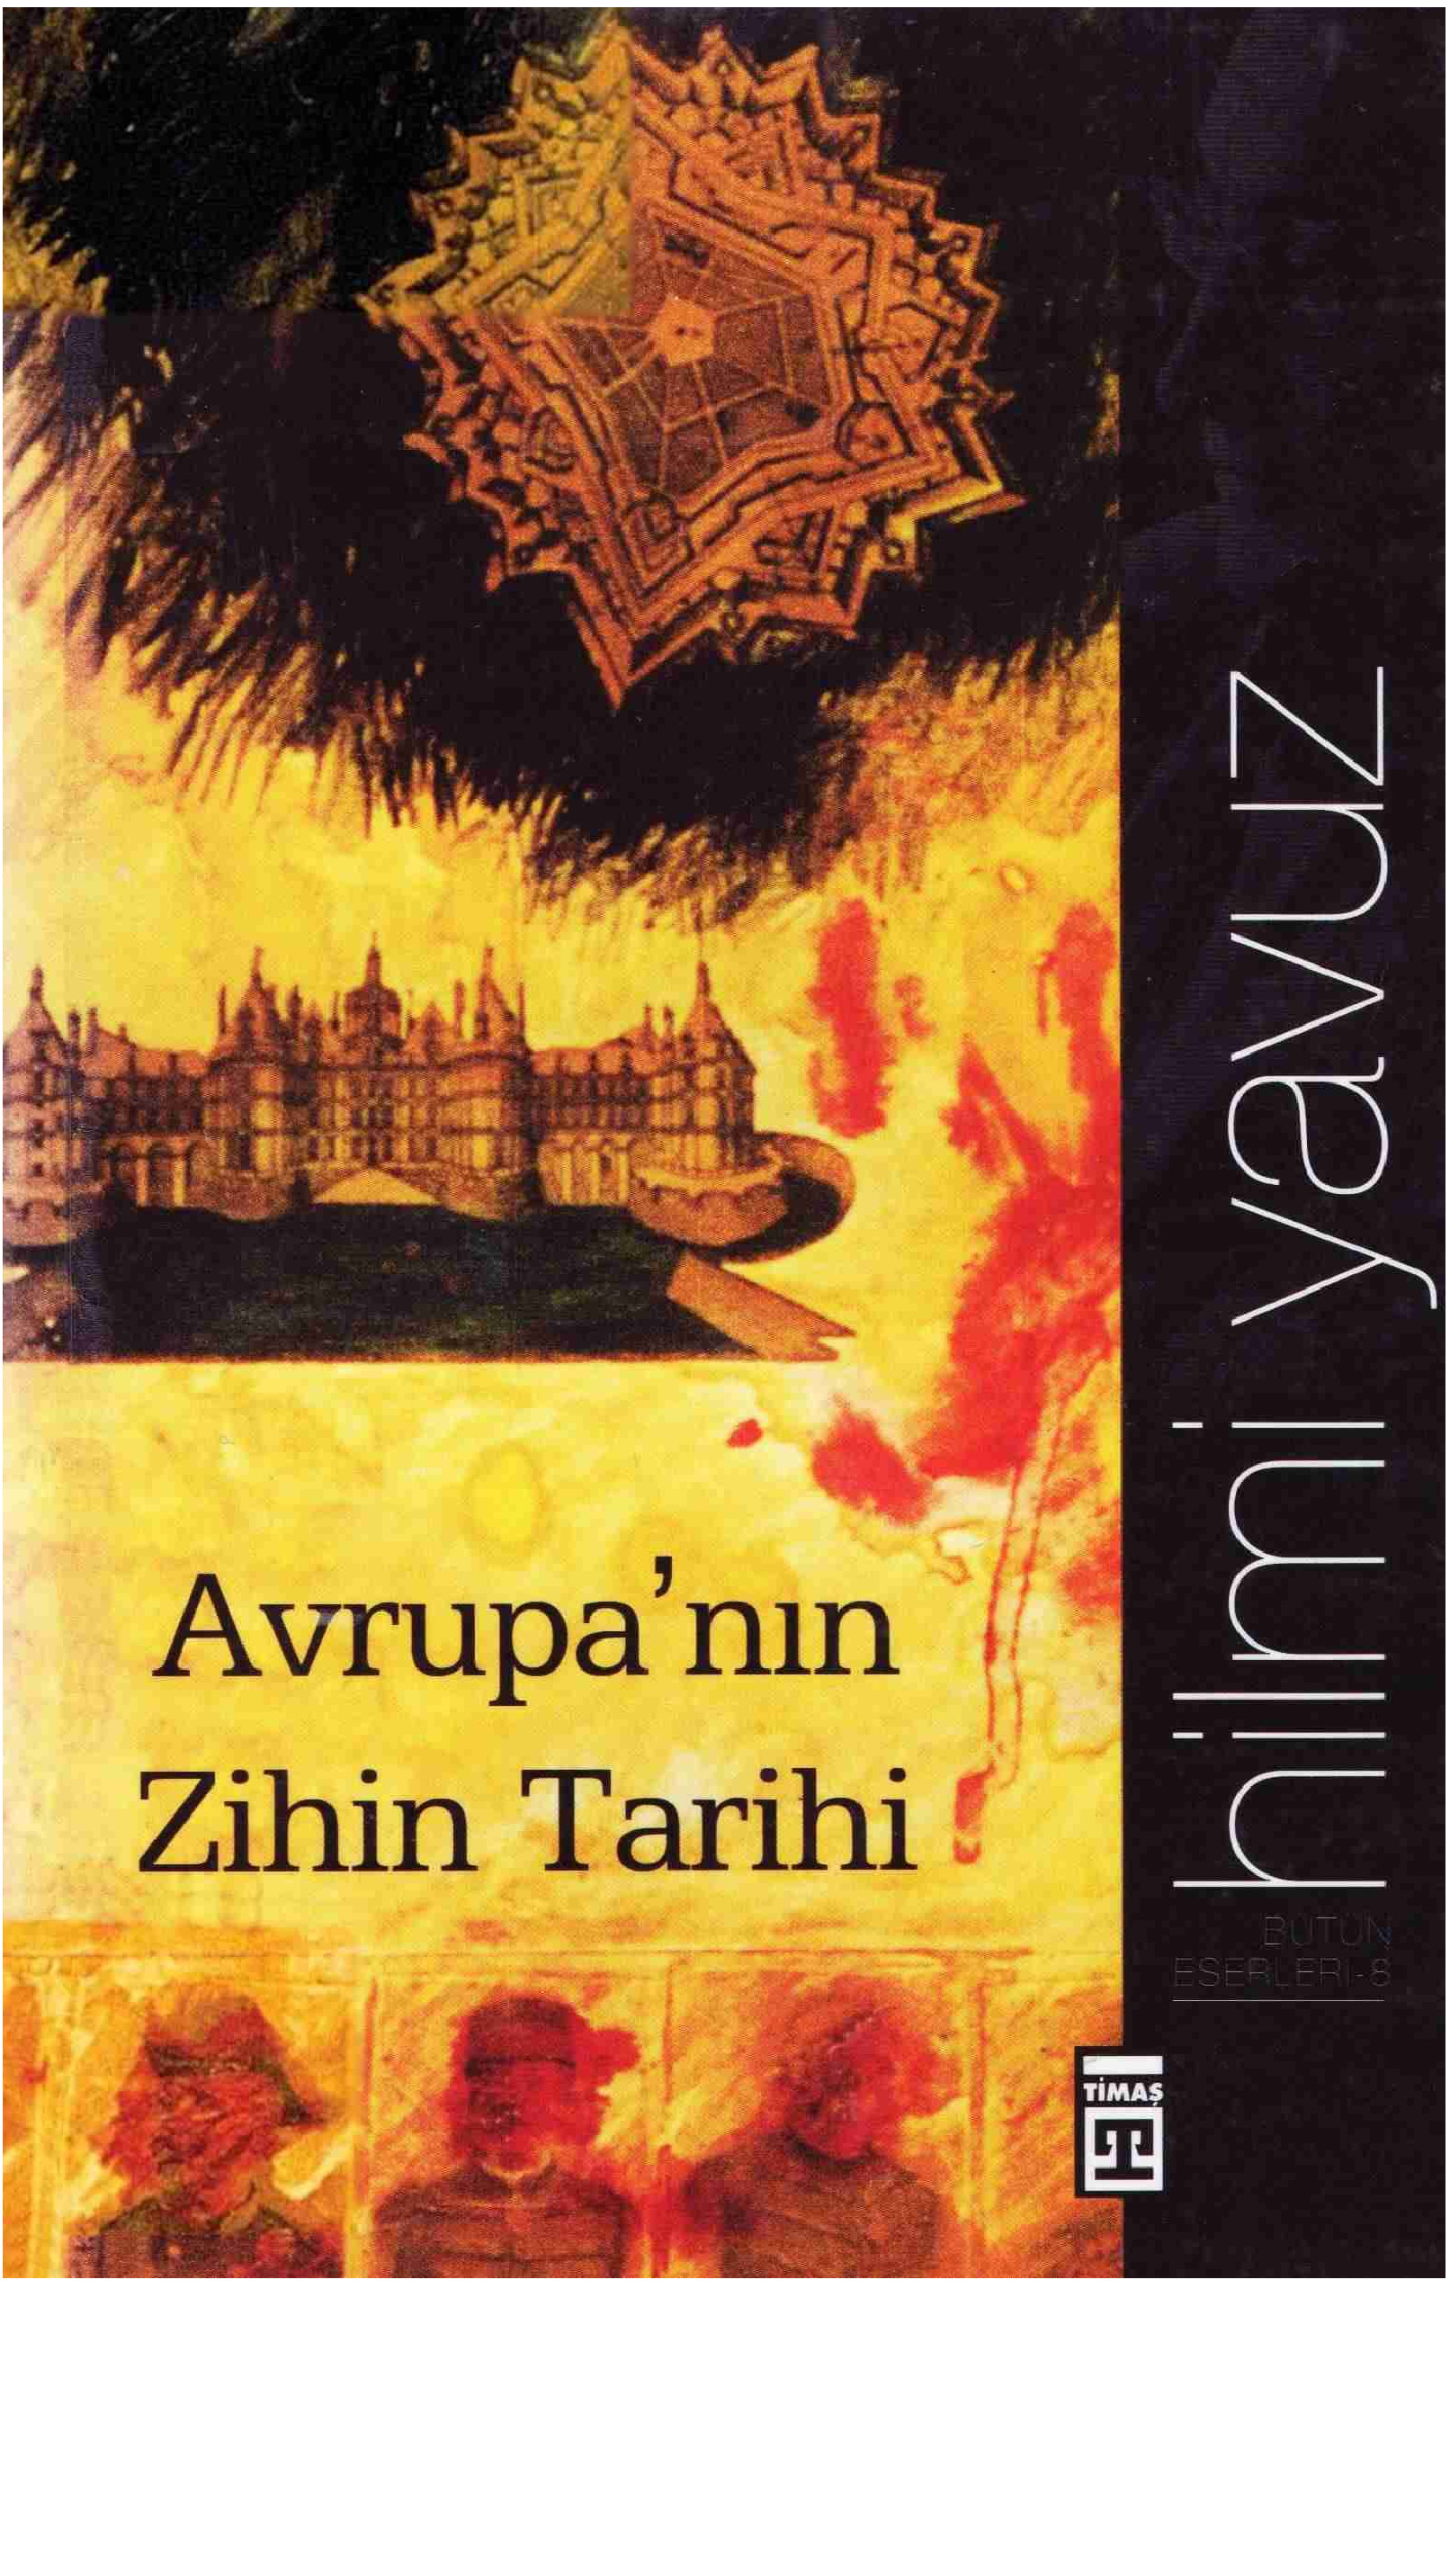 Avrupanın Zihin Tarixi-Hilmi Yavuz-2012-197s